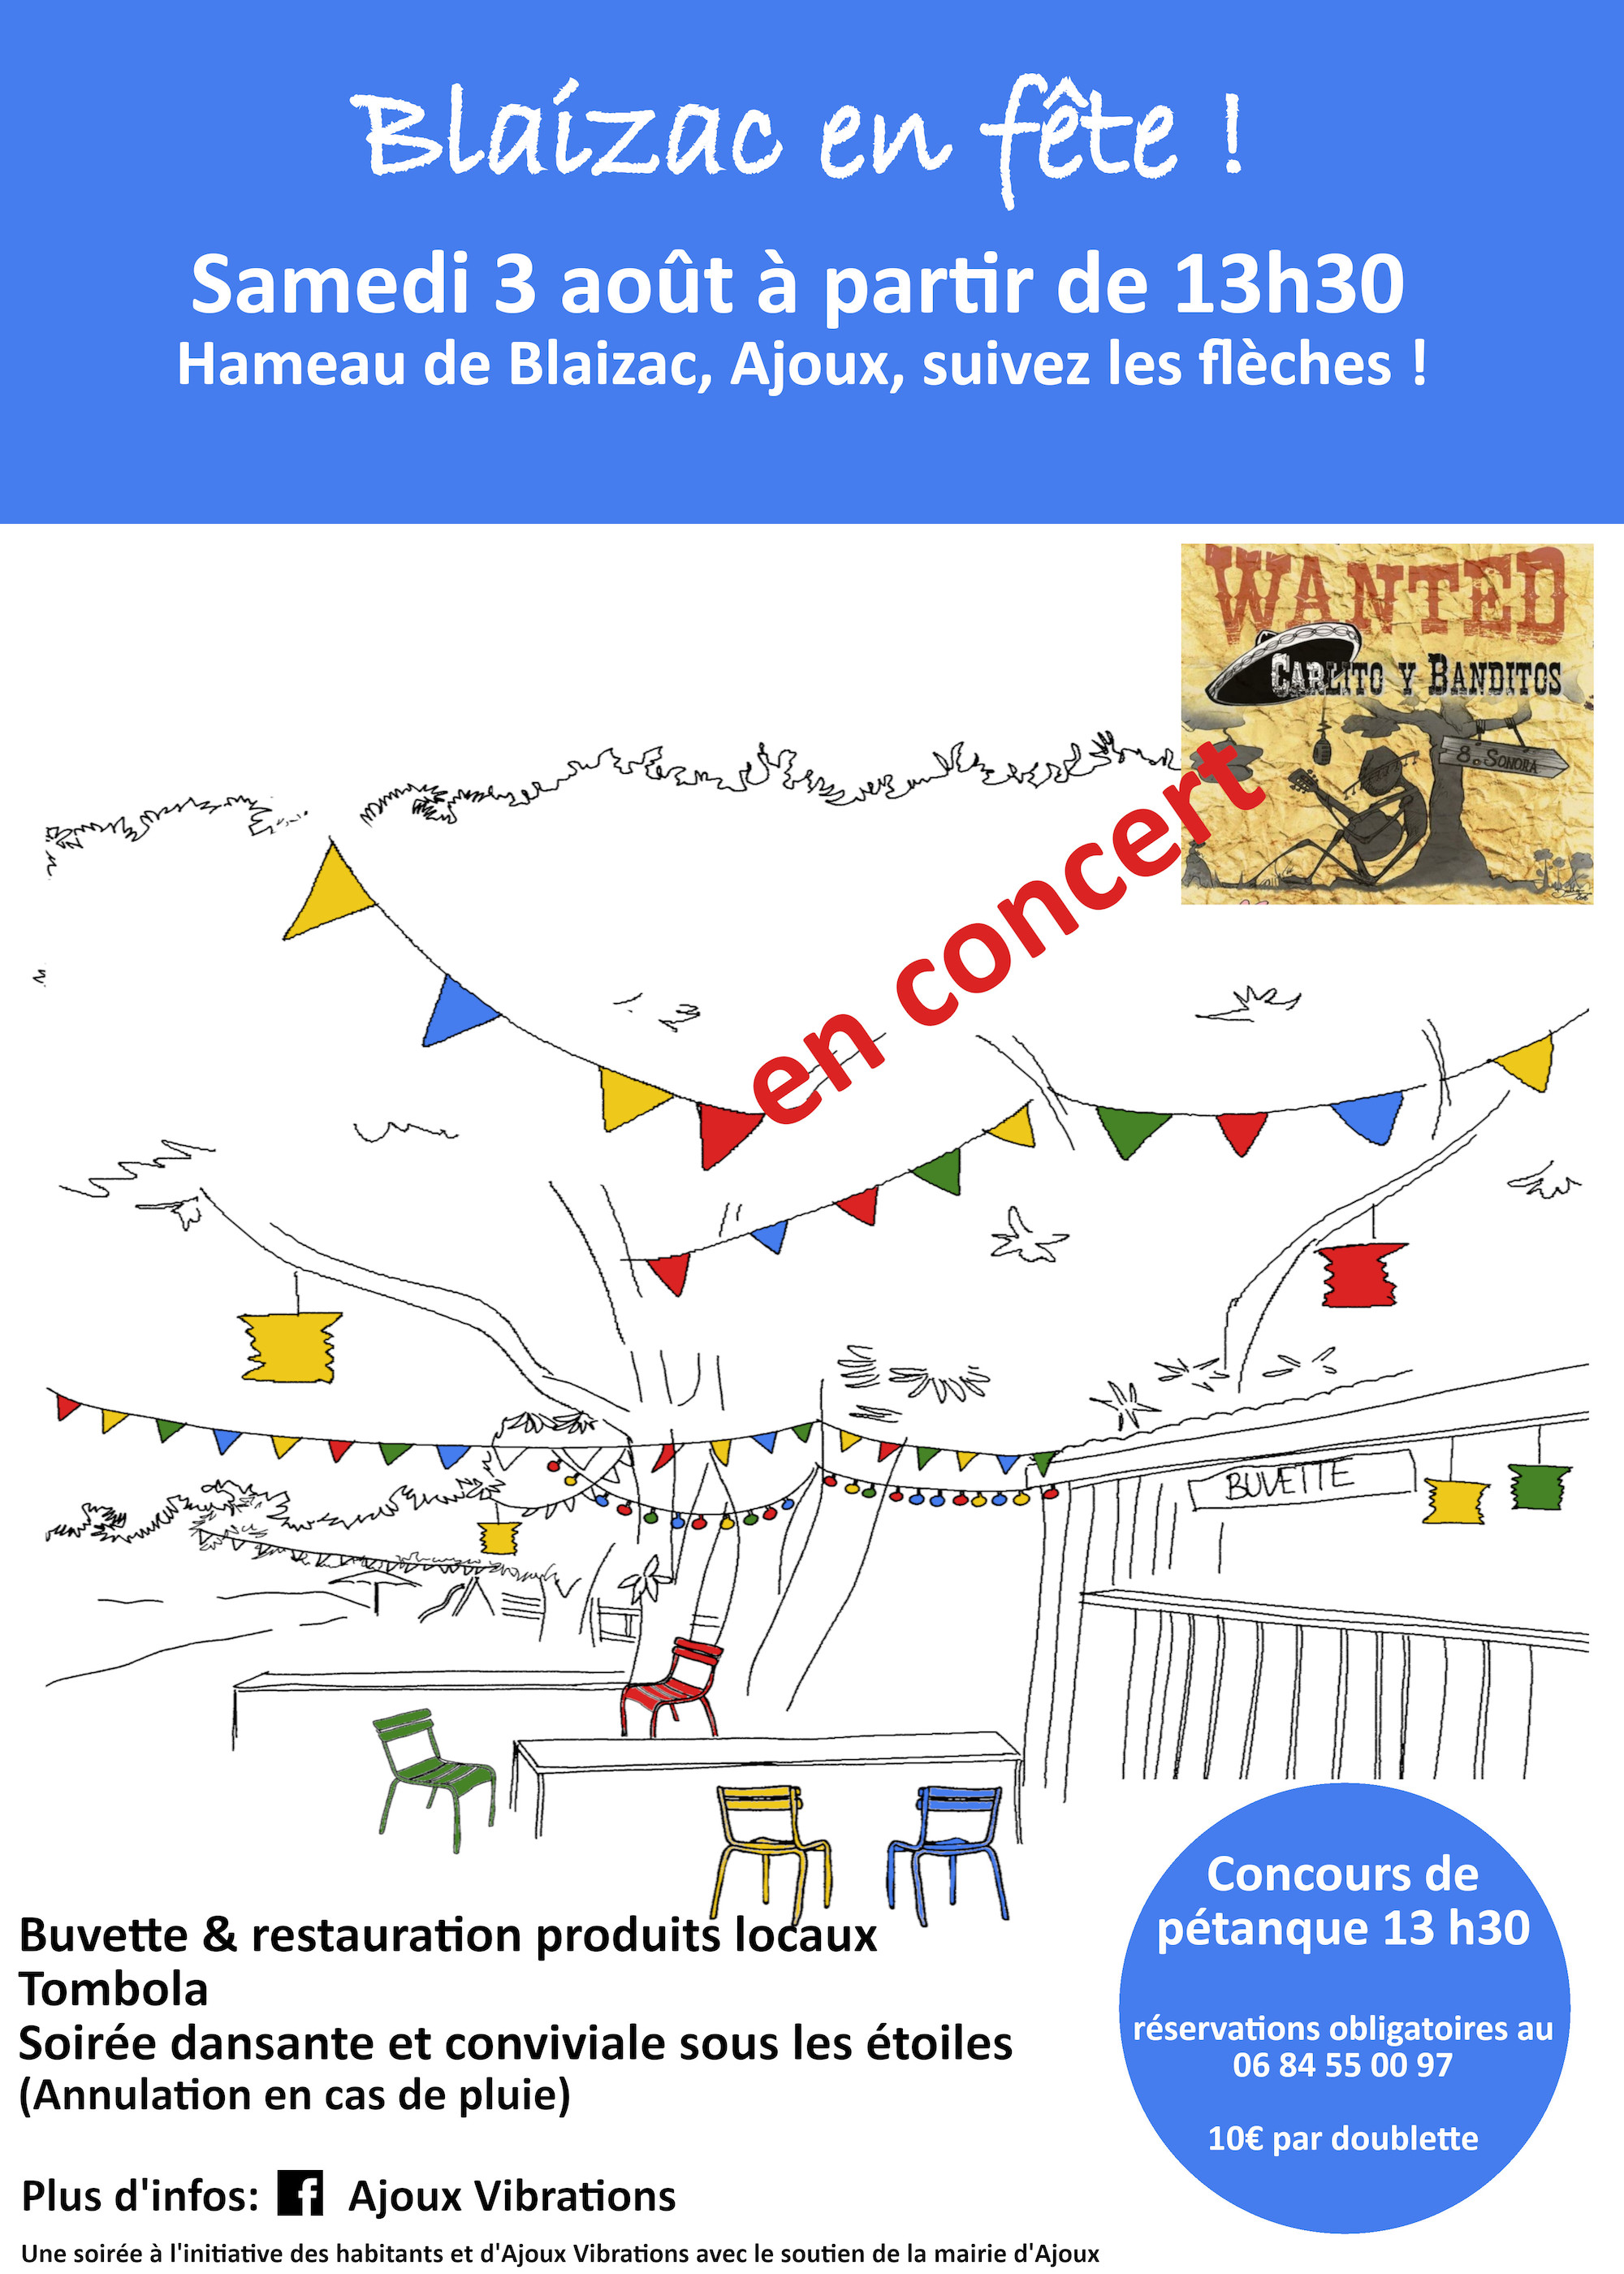 Events…Put it in your diary : Blaizac en fête !